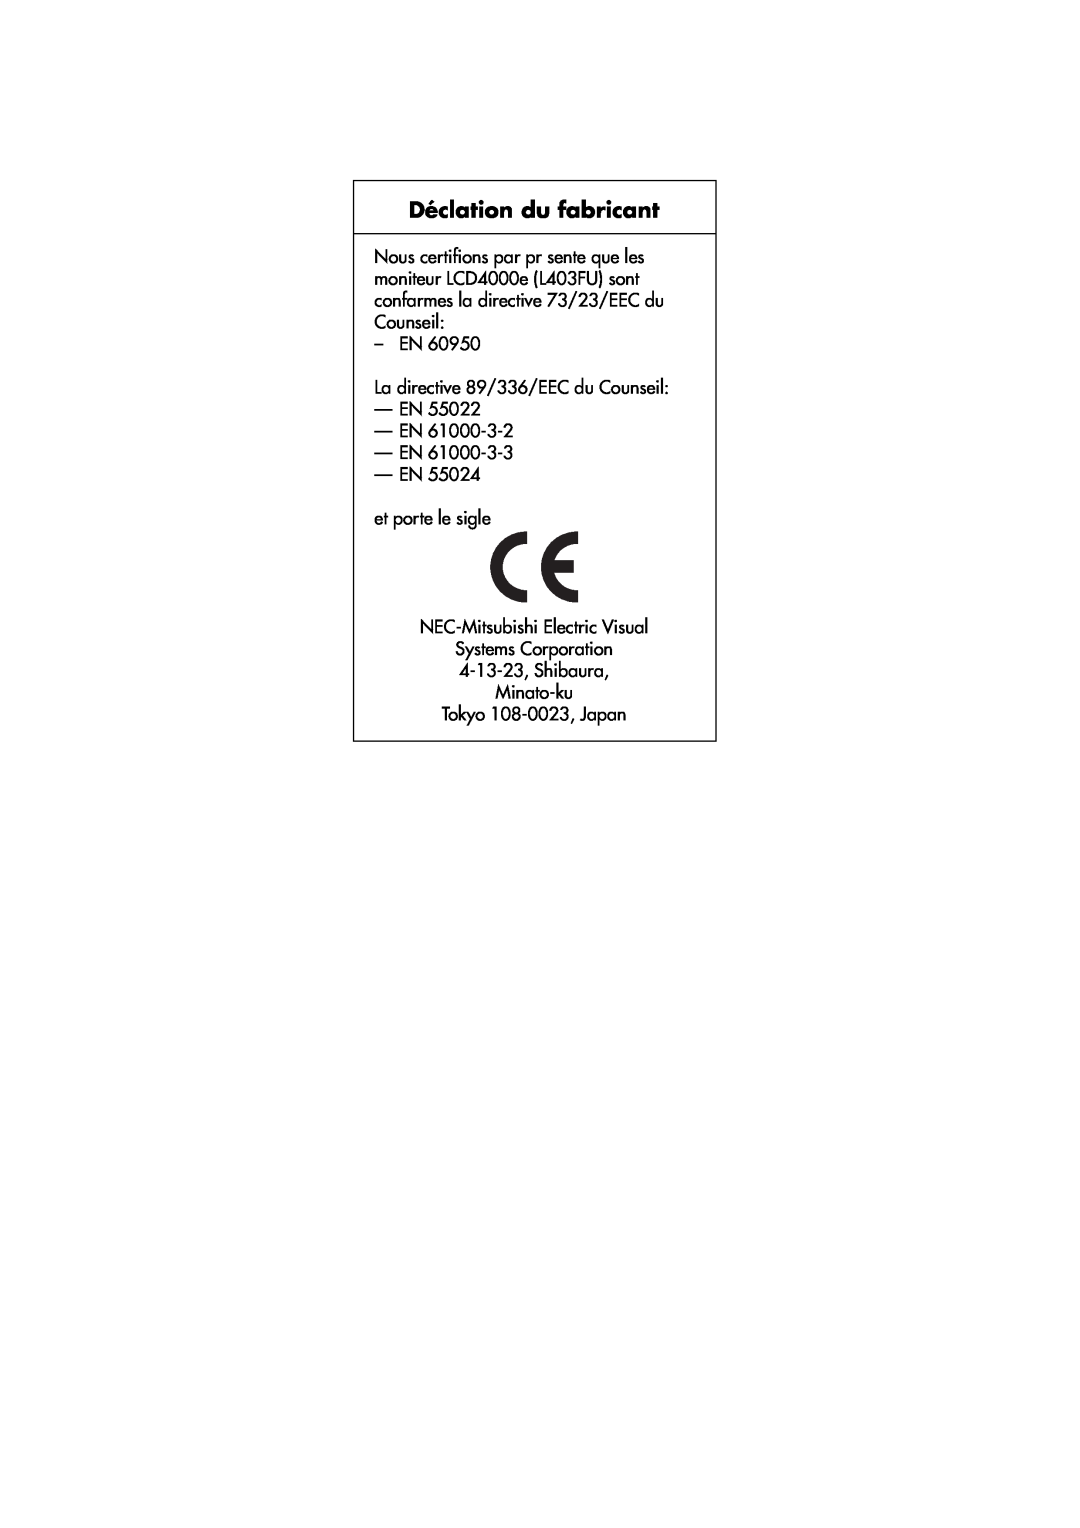 NEC LCD4000e manual Déclation du fabricant, EN La directive 89/336/EEC du Counseil —EN —EN, EN -EN et porte le sigle 